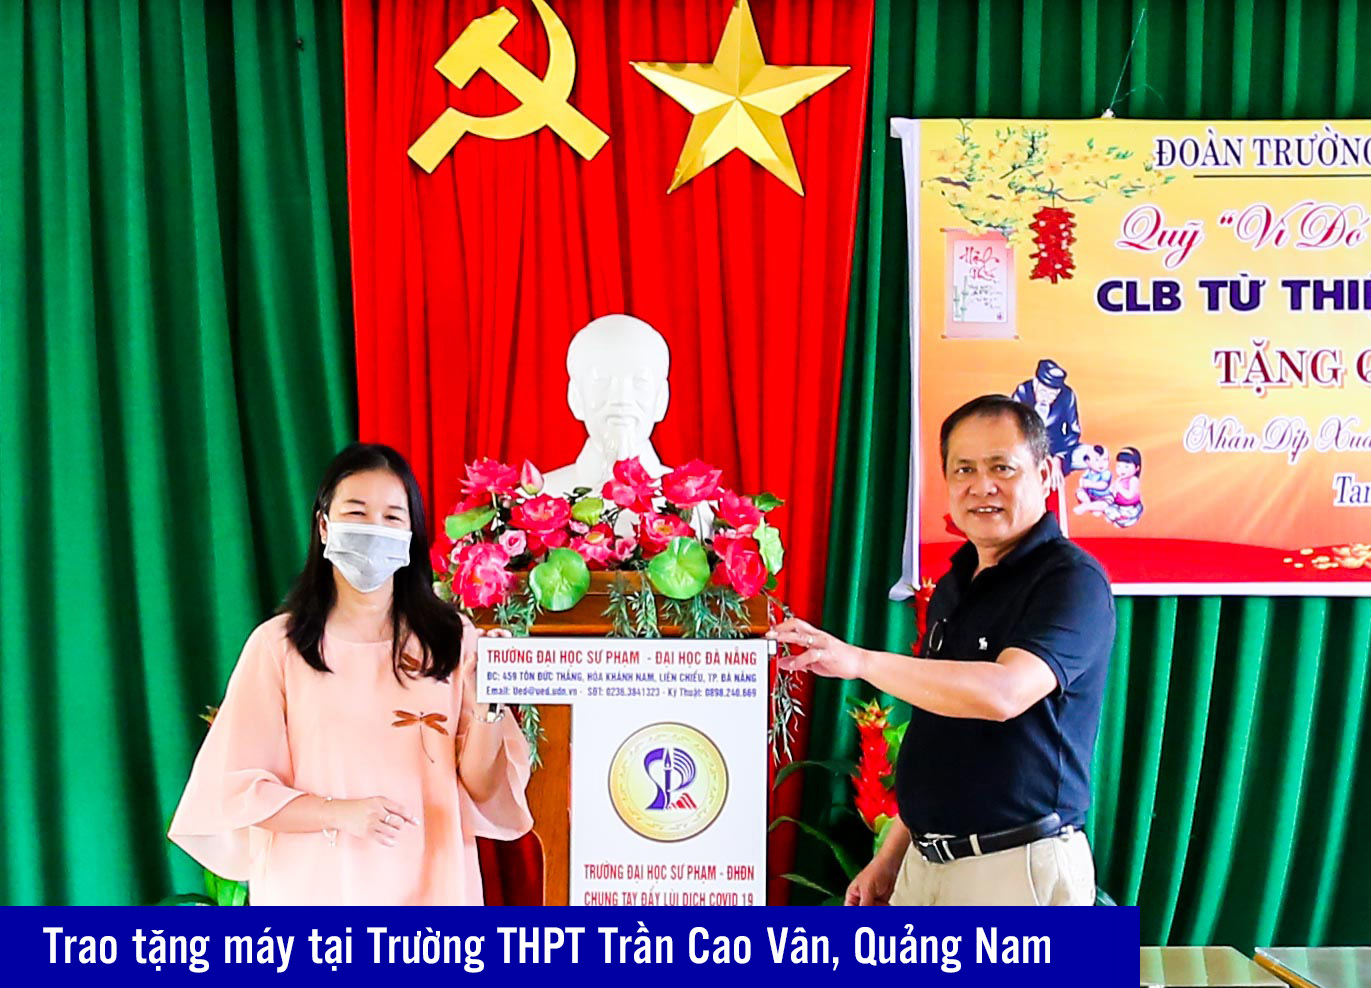 9 Trần Cao Vân, Quảng nam (2)